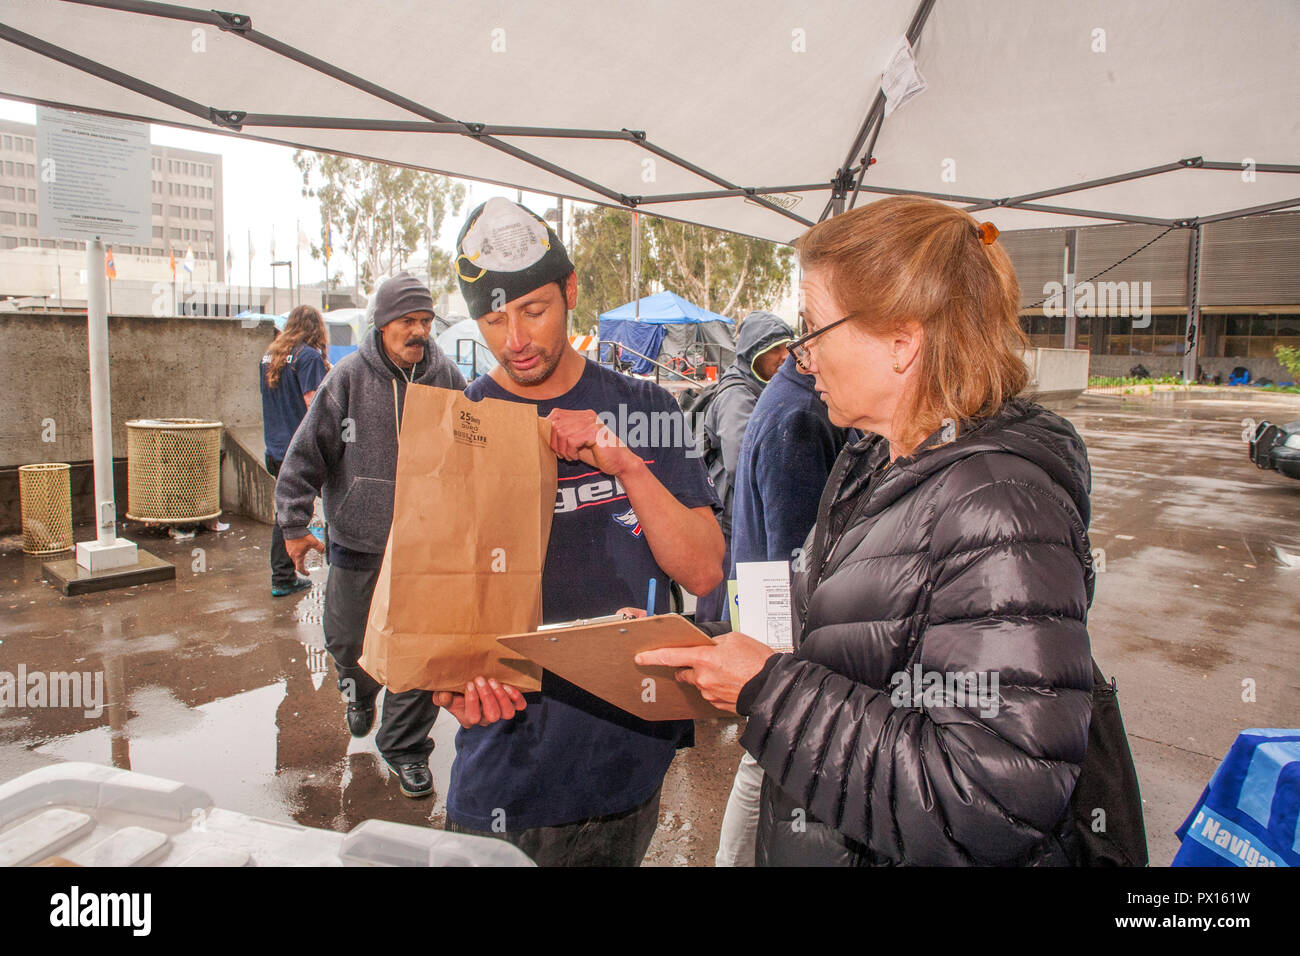 Pour lutter contre l'overdose aux opiacés, multiracial volontaires distribuent des kits d'antidote de Naloxone dans des sacs en papier à un campement de sans-abri à Santa Ana, CA. Banque D'Images